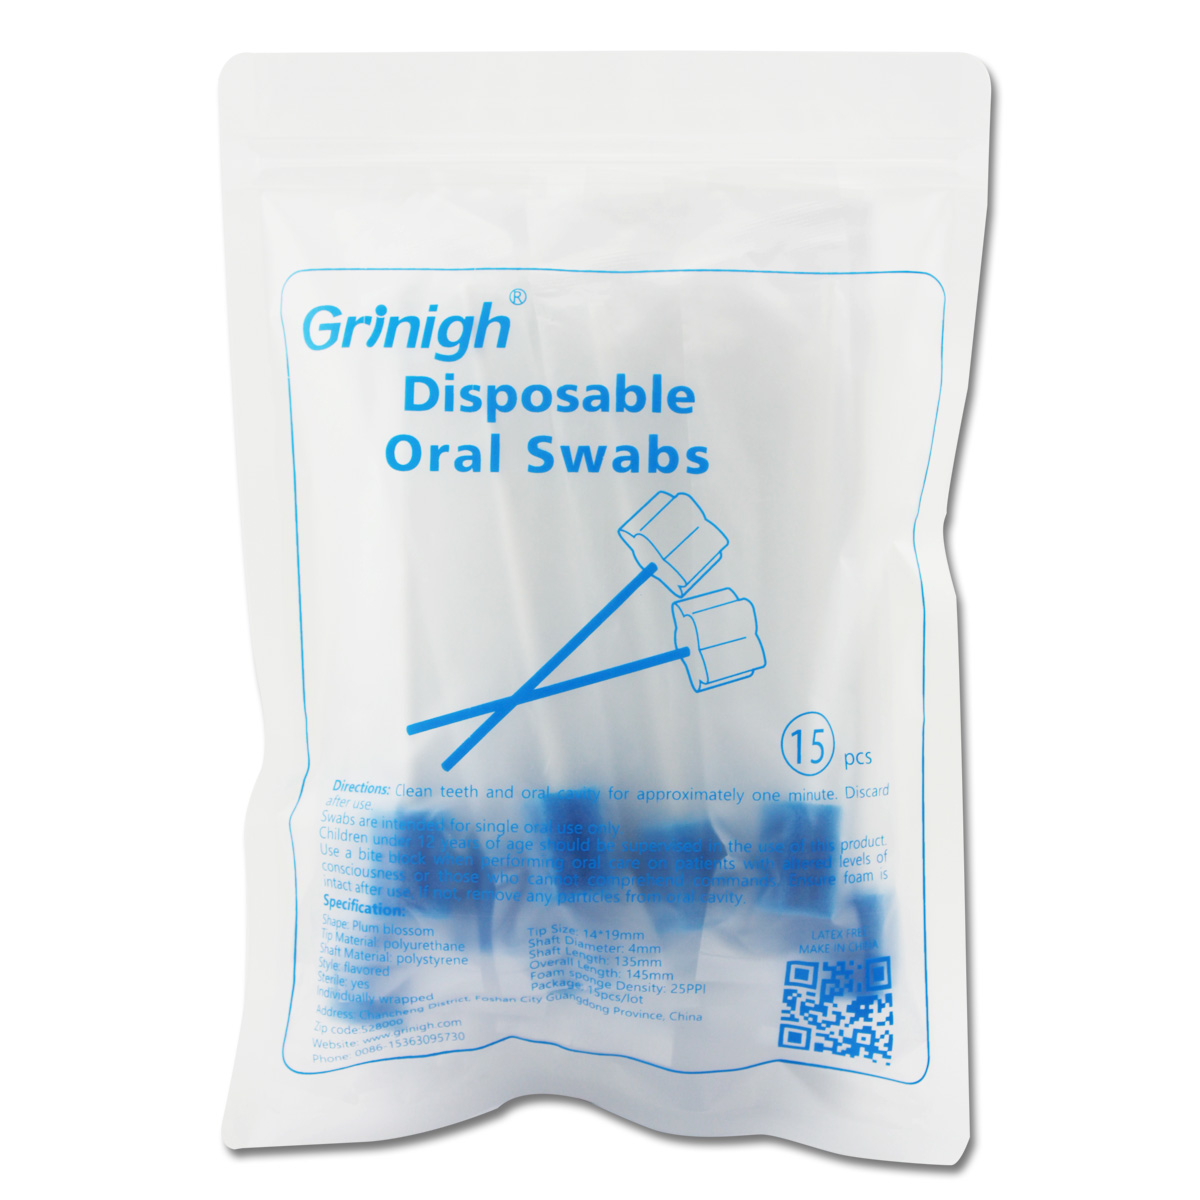 Desechable tratada sin sabor cuidado oral Esponja hisopos - 15 Contar hisopos envuelta individualmente para uso médico oral